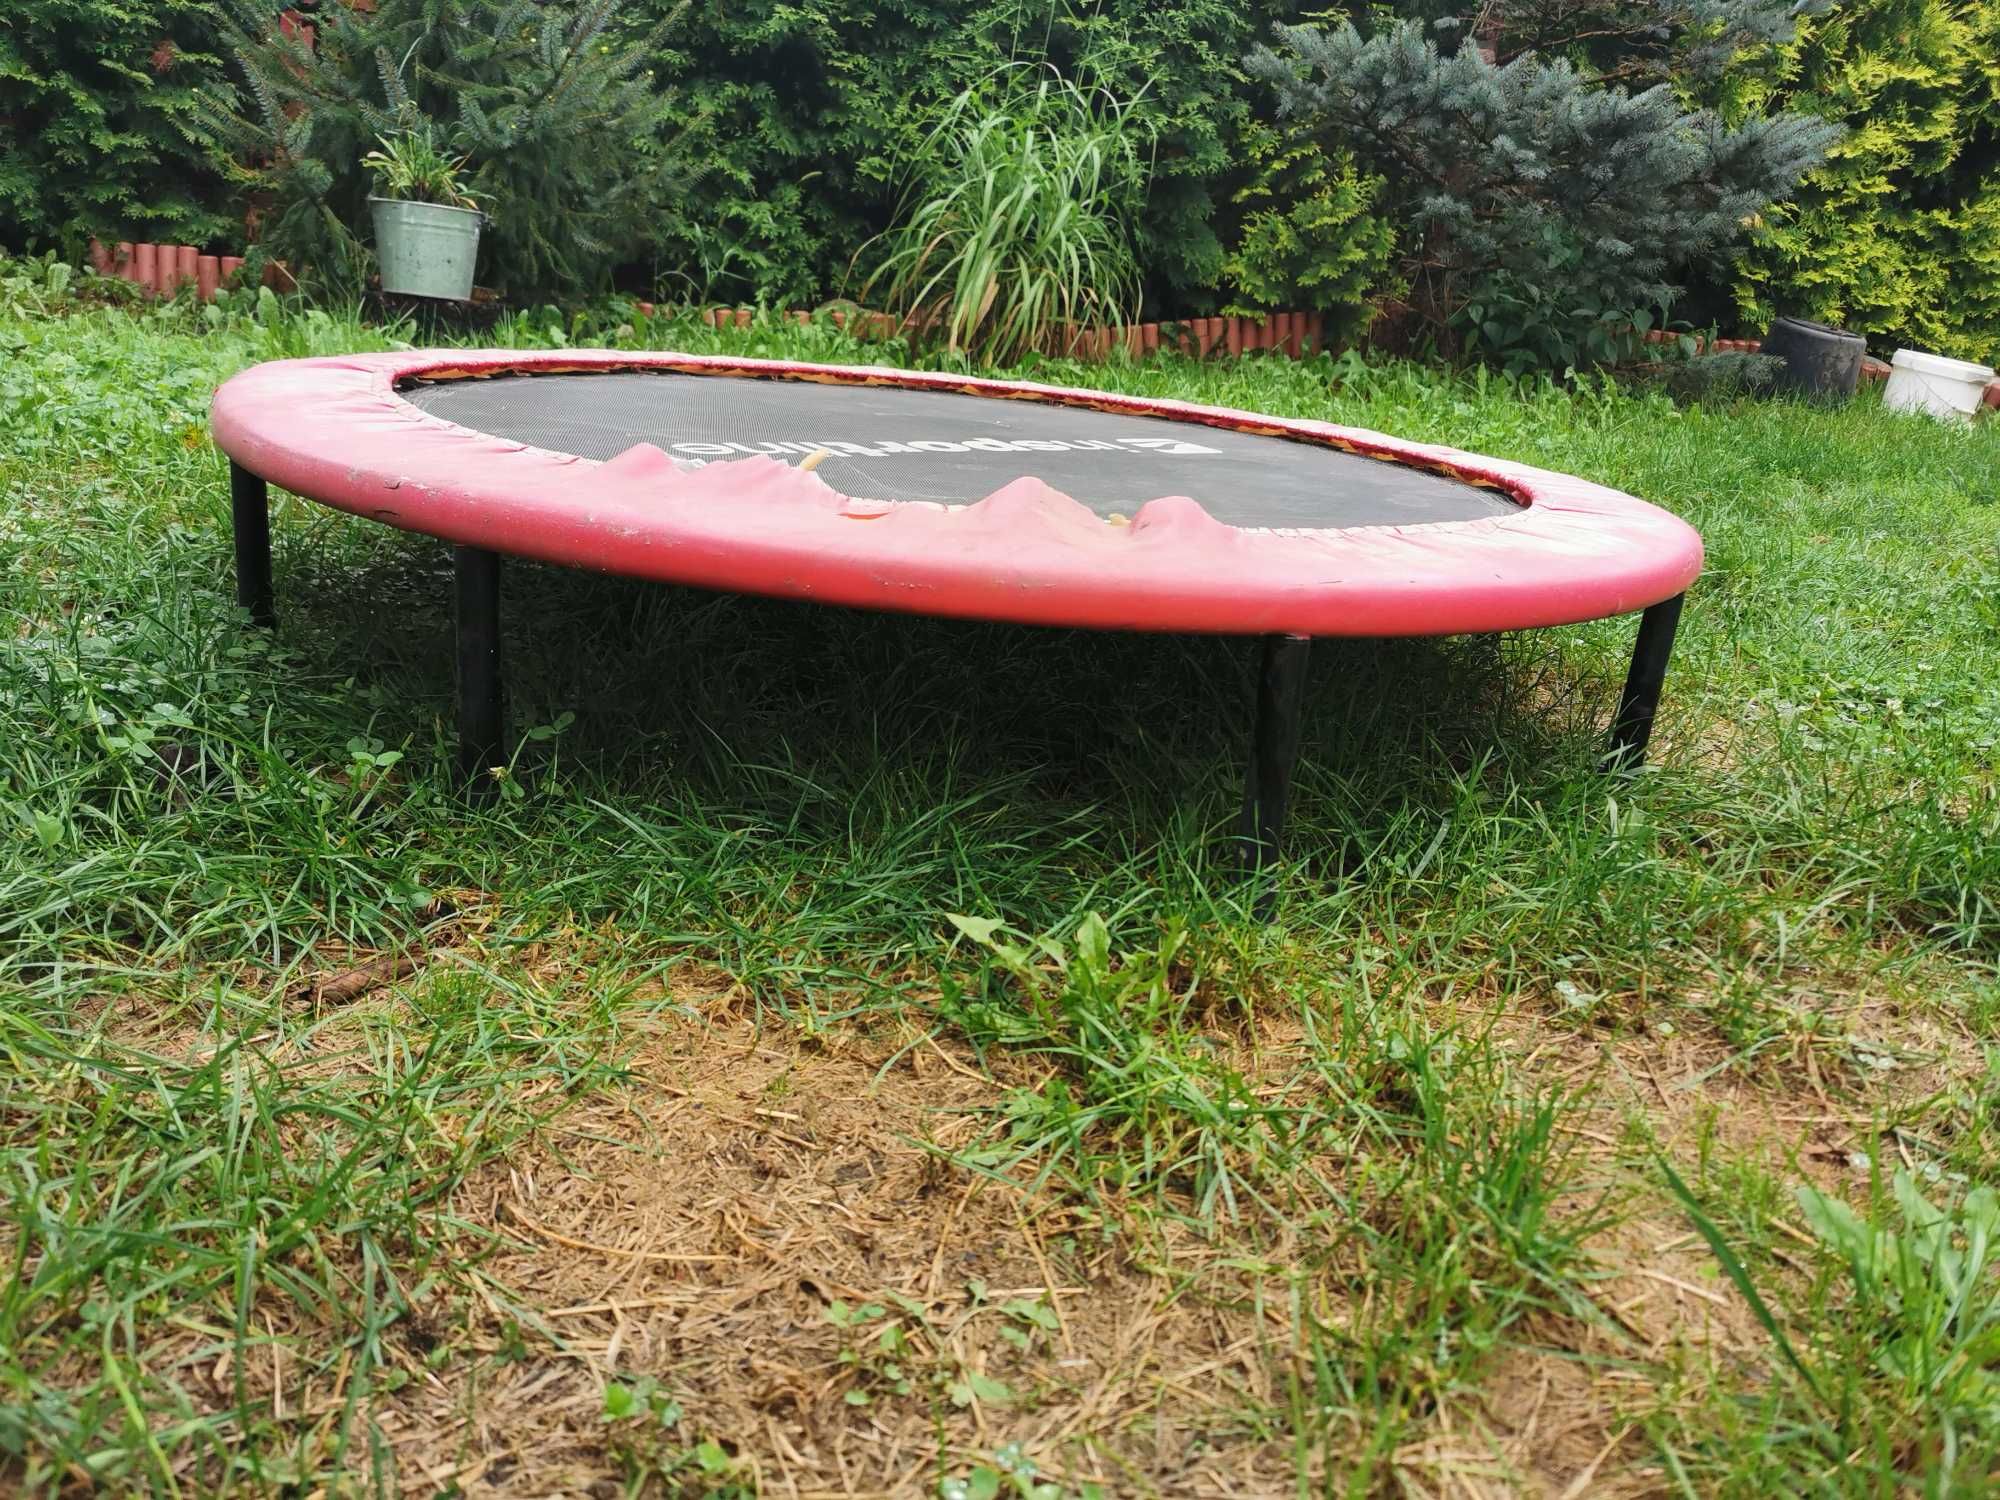 Mini trampolina insportline